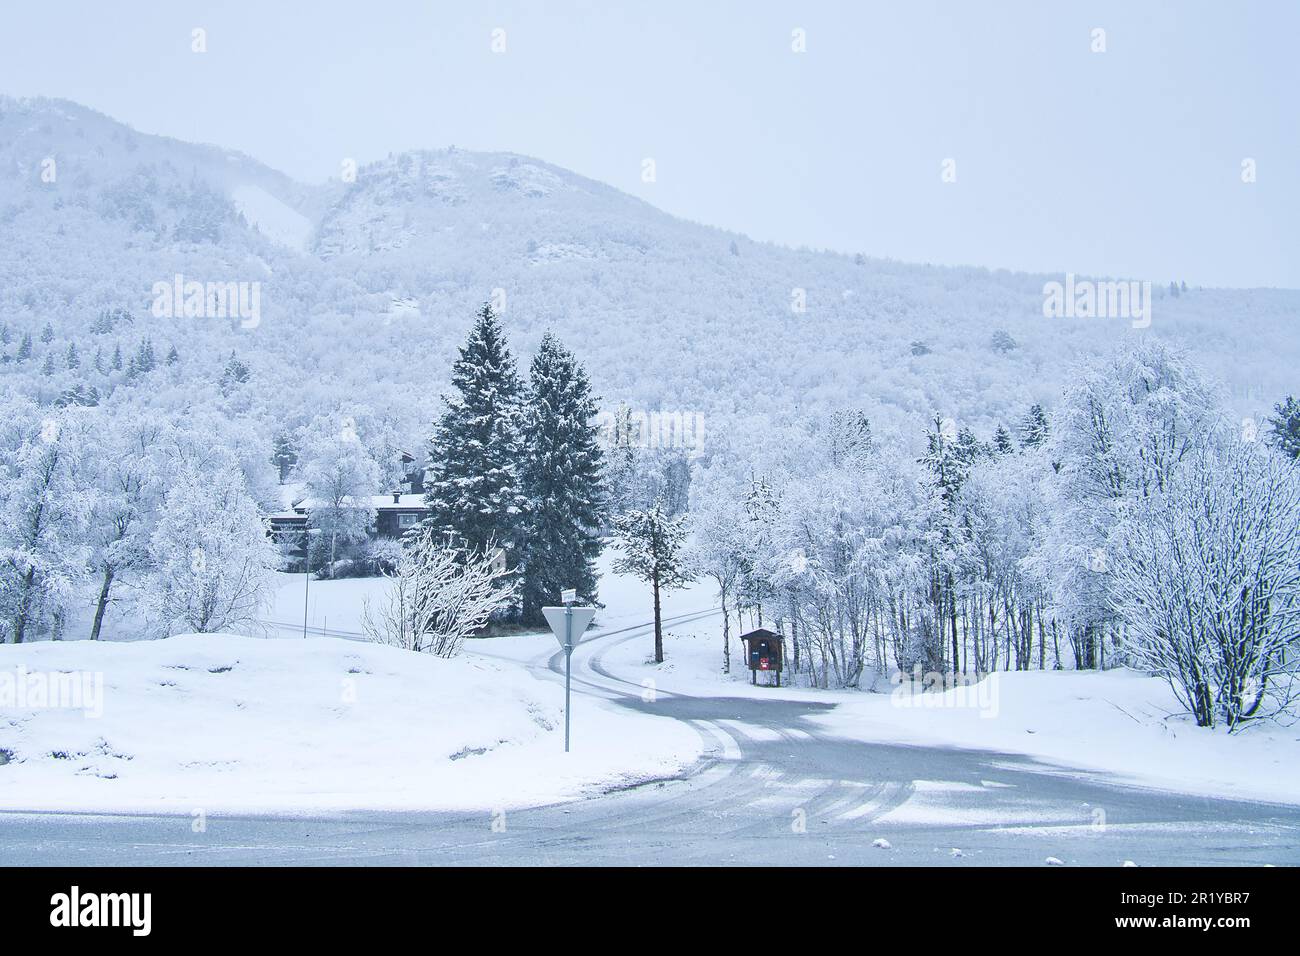 Paysage d'hiver en Scandinavie. Avec des arbres enneigés sur une route. Photo de paysage du nord Banque D'Images